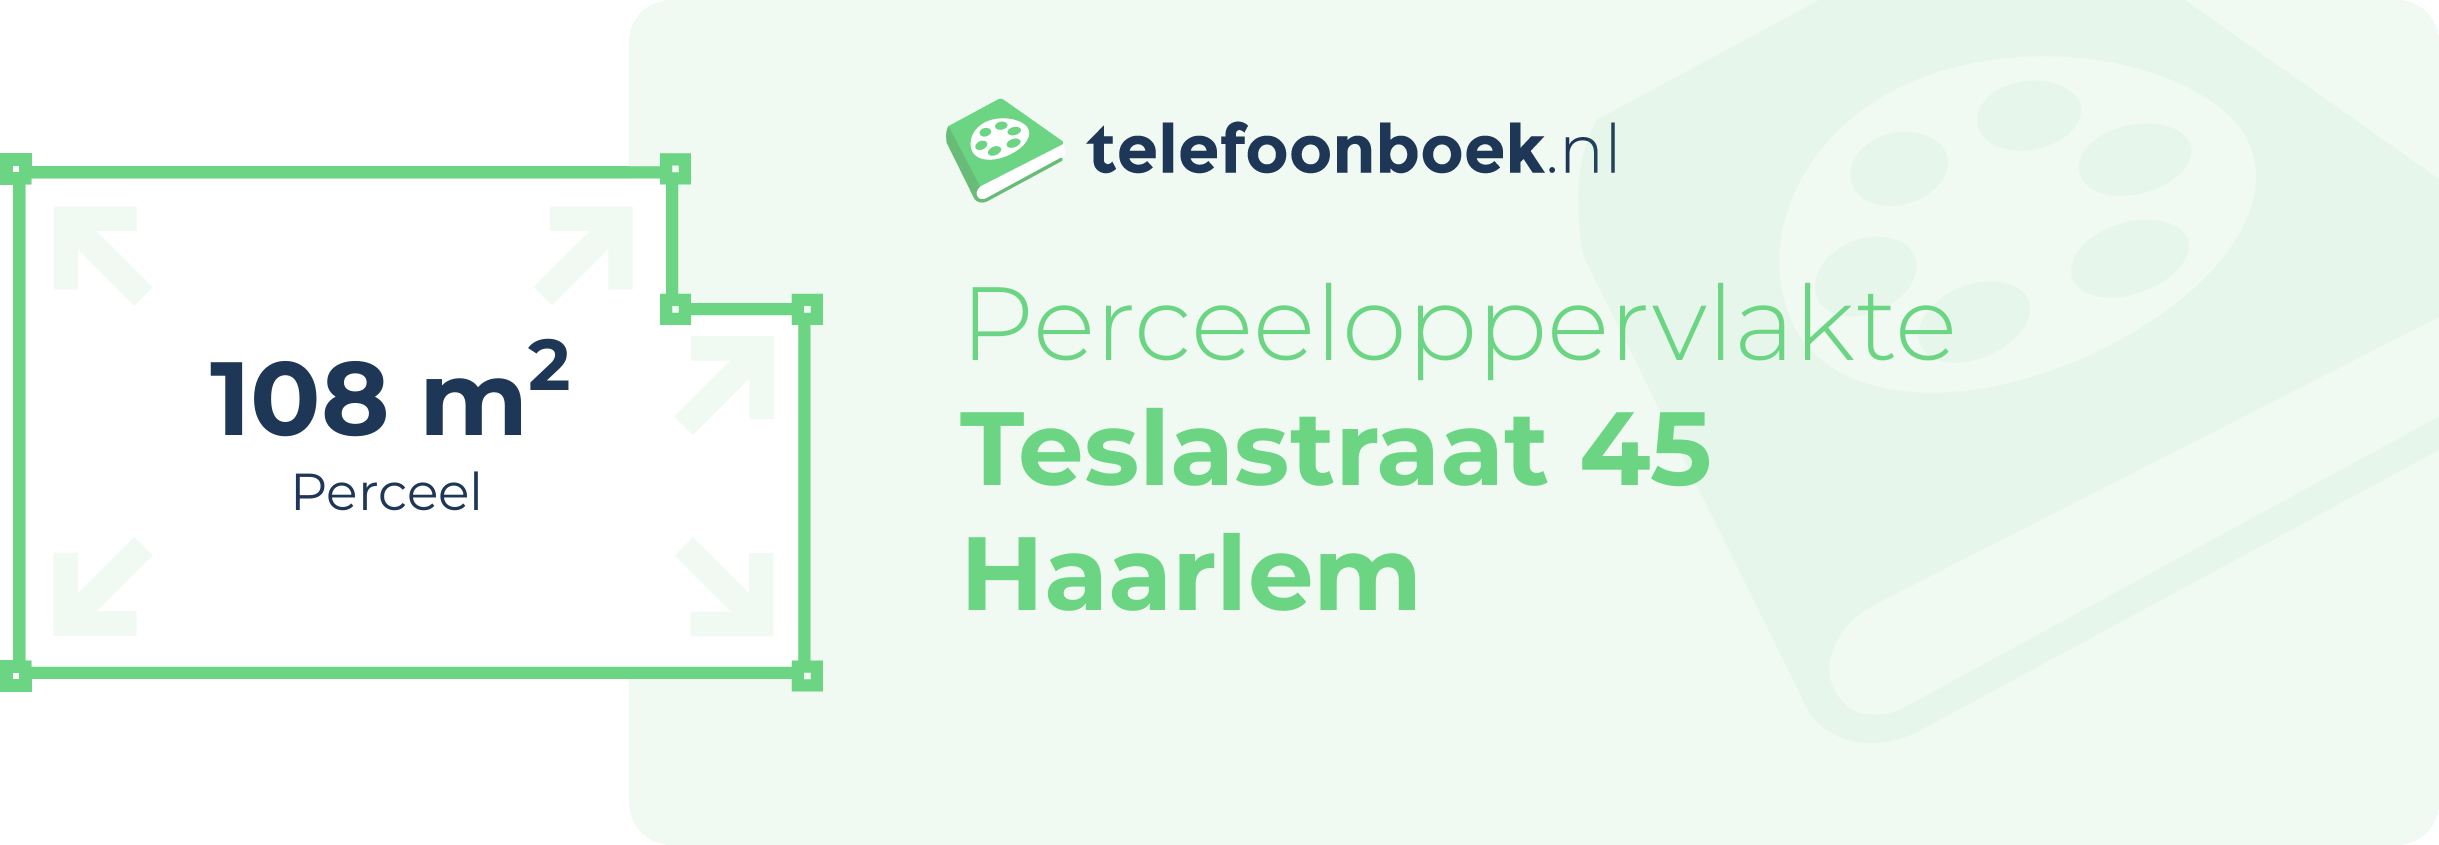 Perceeloppervlakte Teslastraat 45 Haarlem